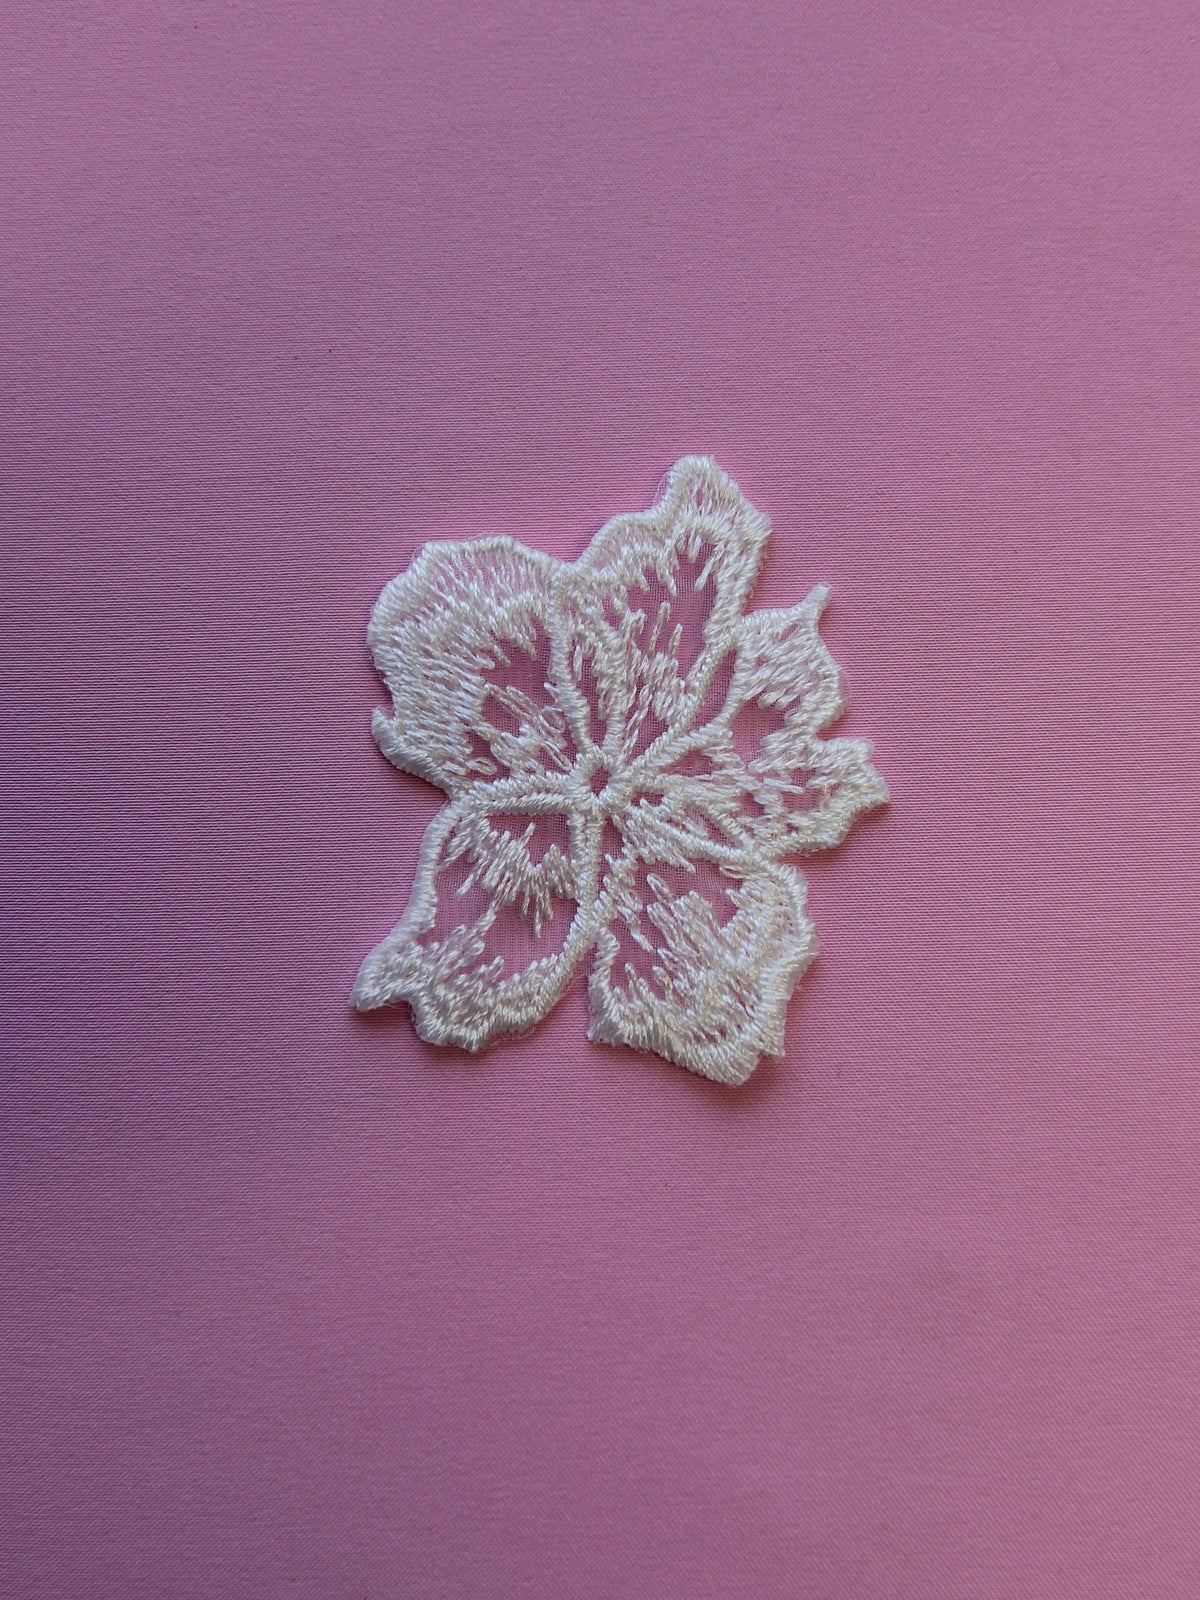 Elfenbeinfarbene bestickte Blume – Phlox (Beutel mit 10 Stück)